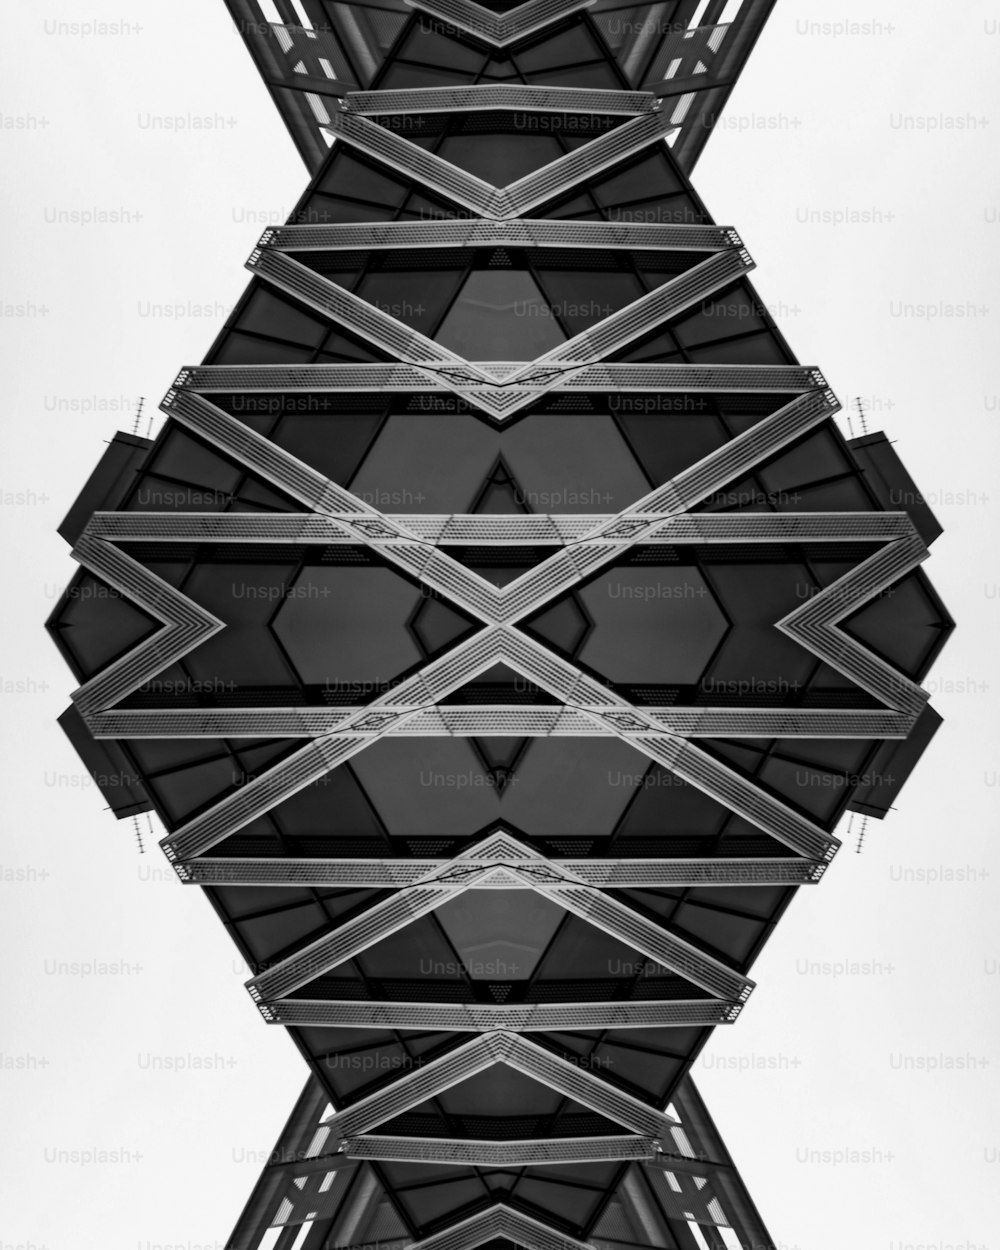 構造物の白黒写真